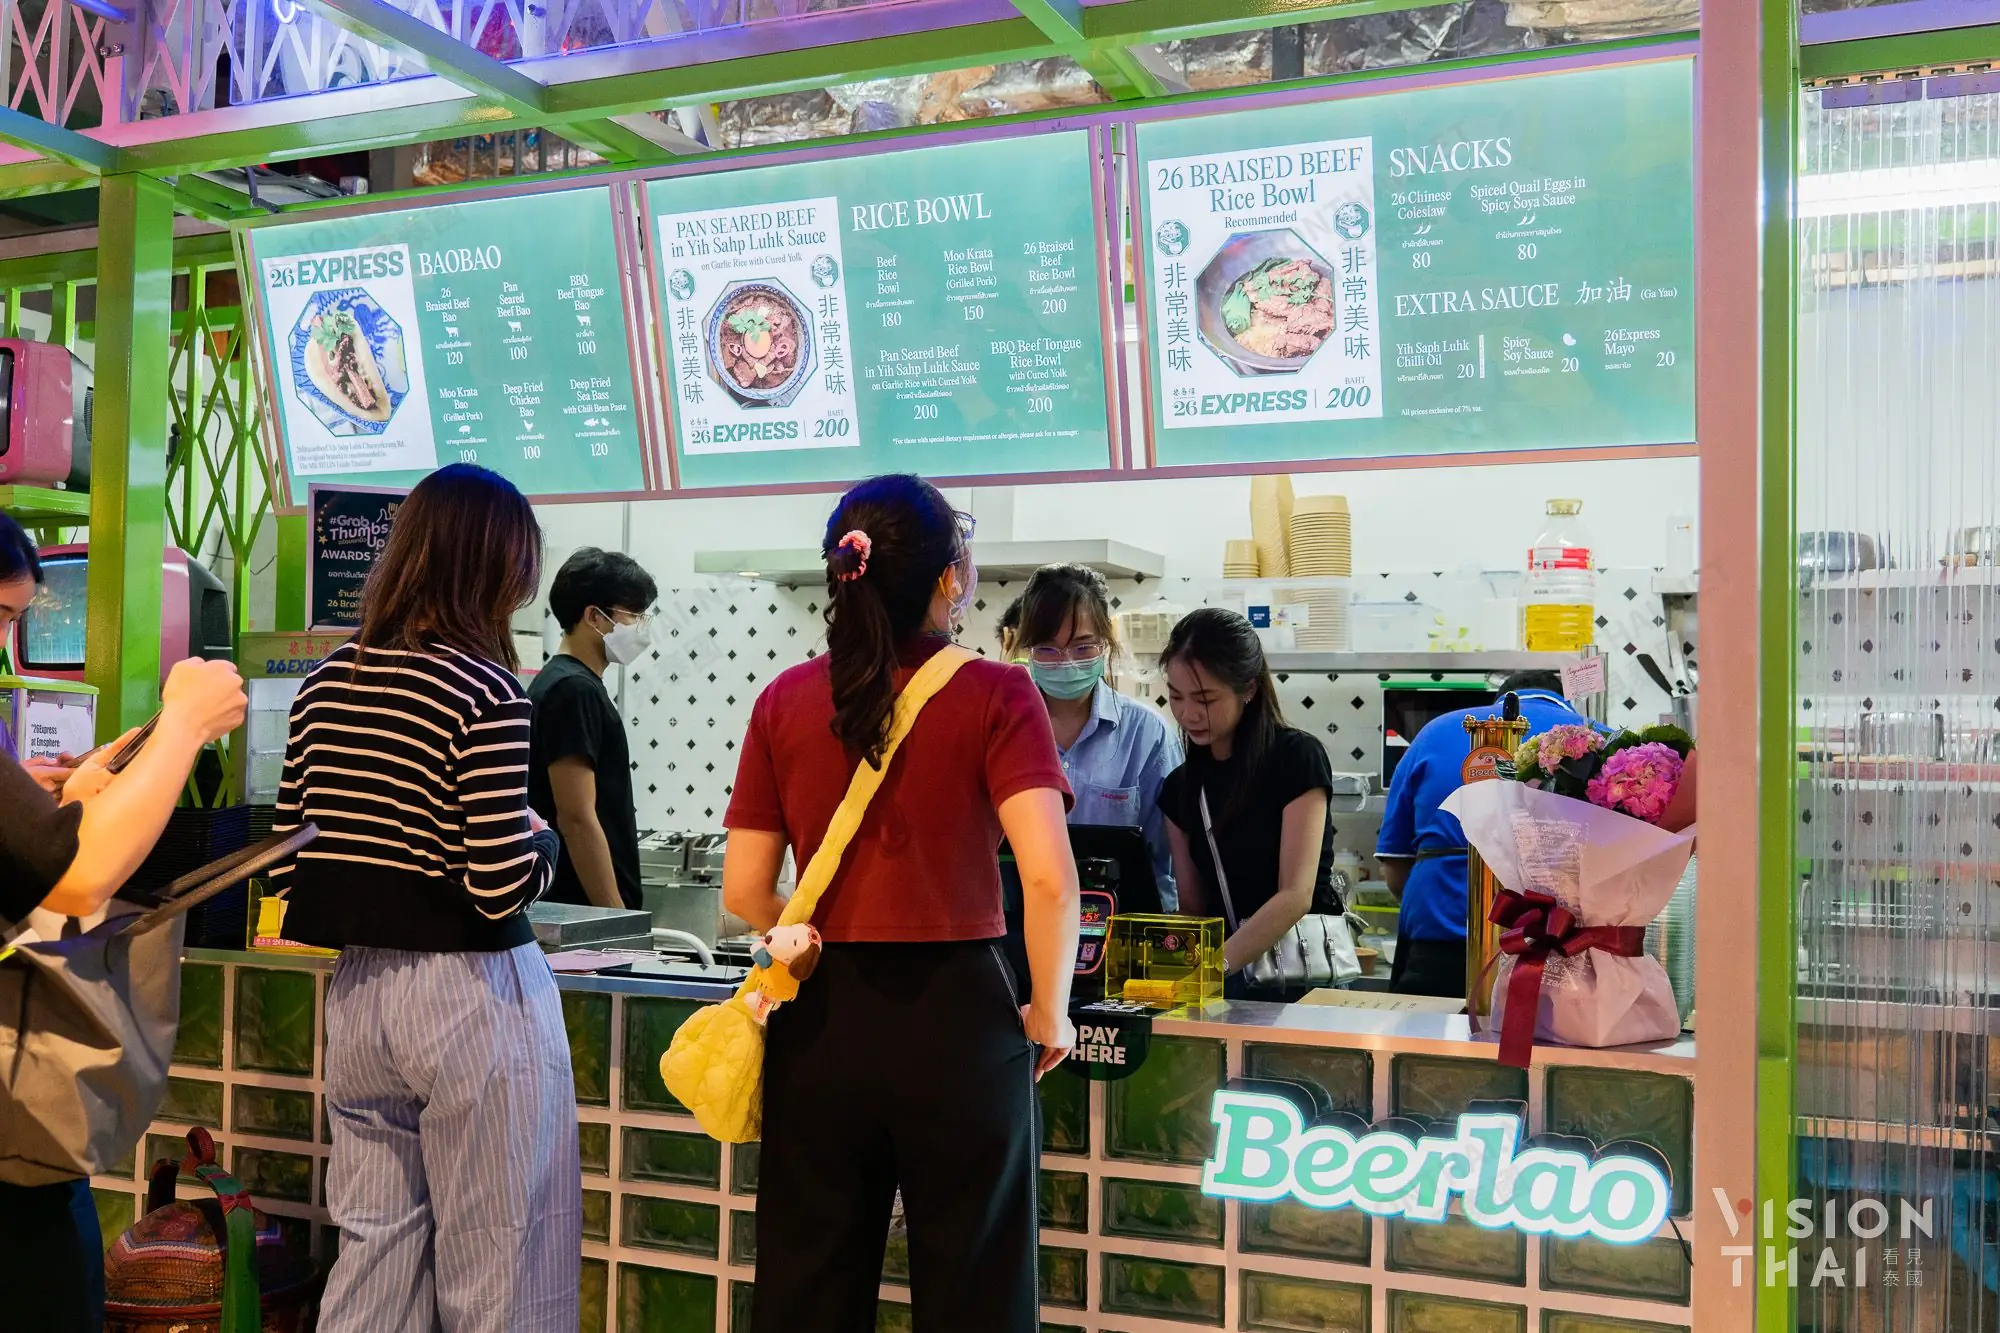 曼谷EMSPHERE購物中心，獨家美食品牌26 Express！（圖片來源：Vision Thai 看見泰國）